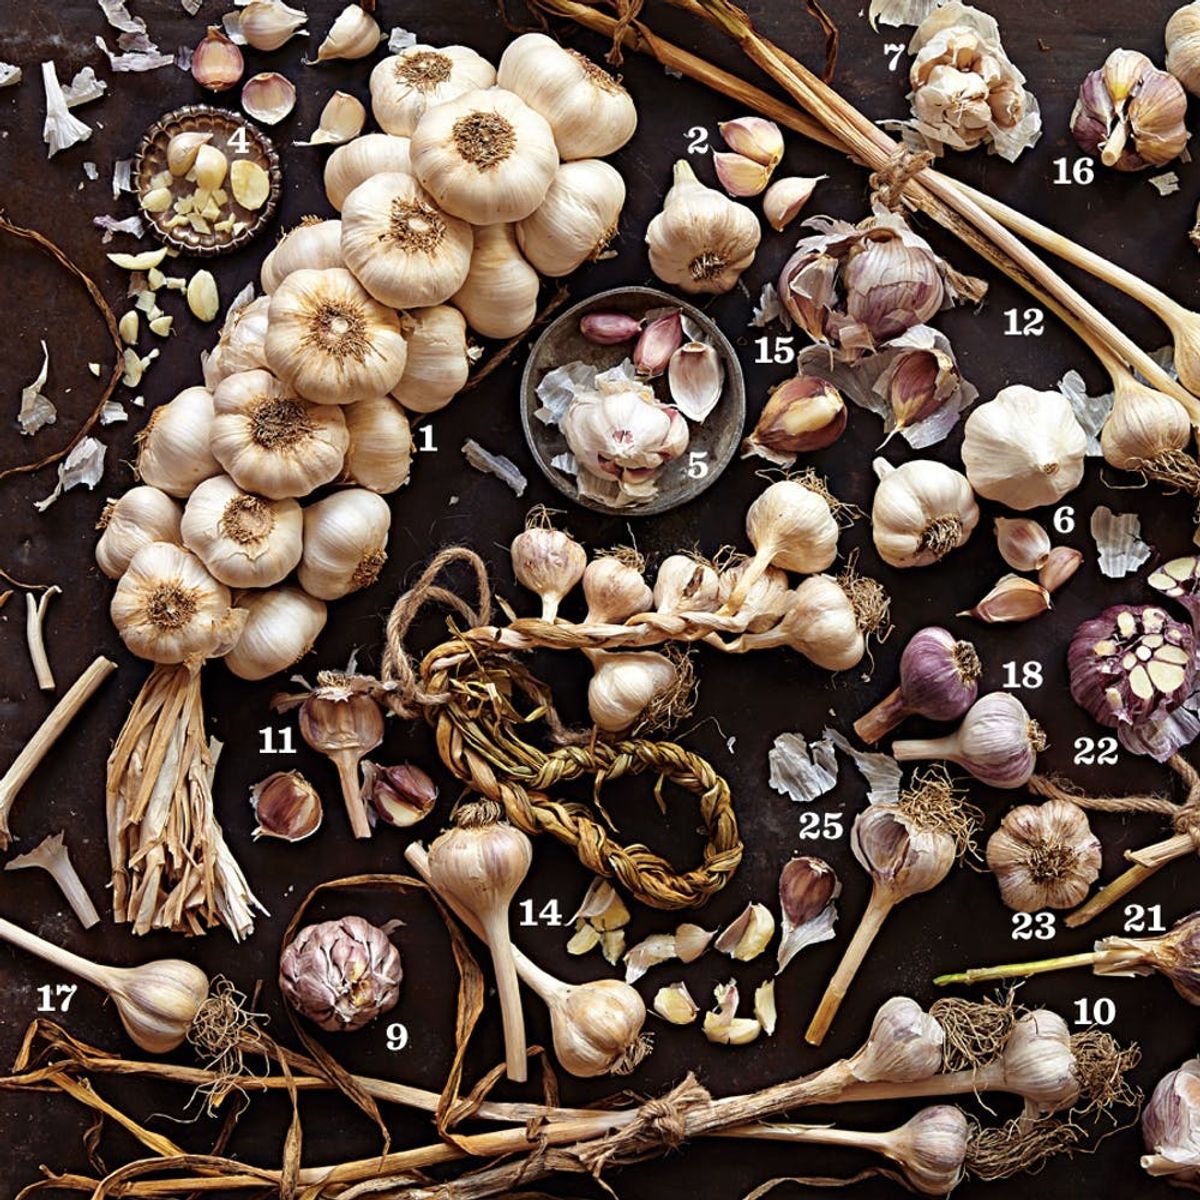 Kitchen Hack Alert: How to Peel Garlic in 10 Seconds